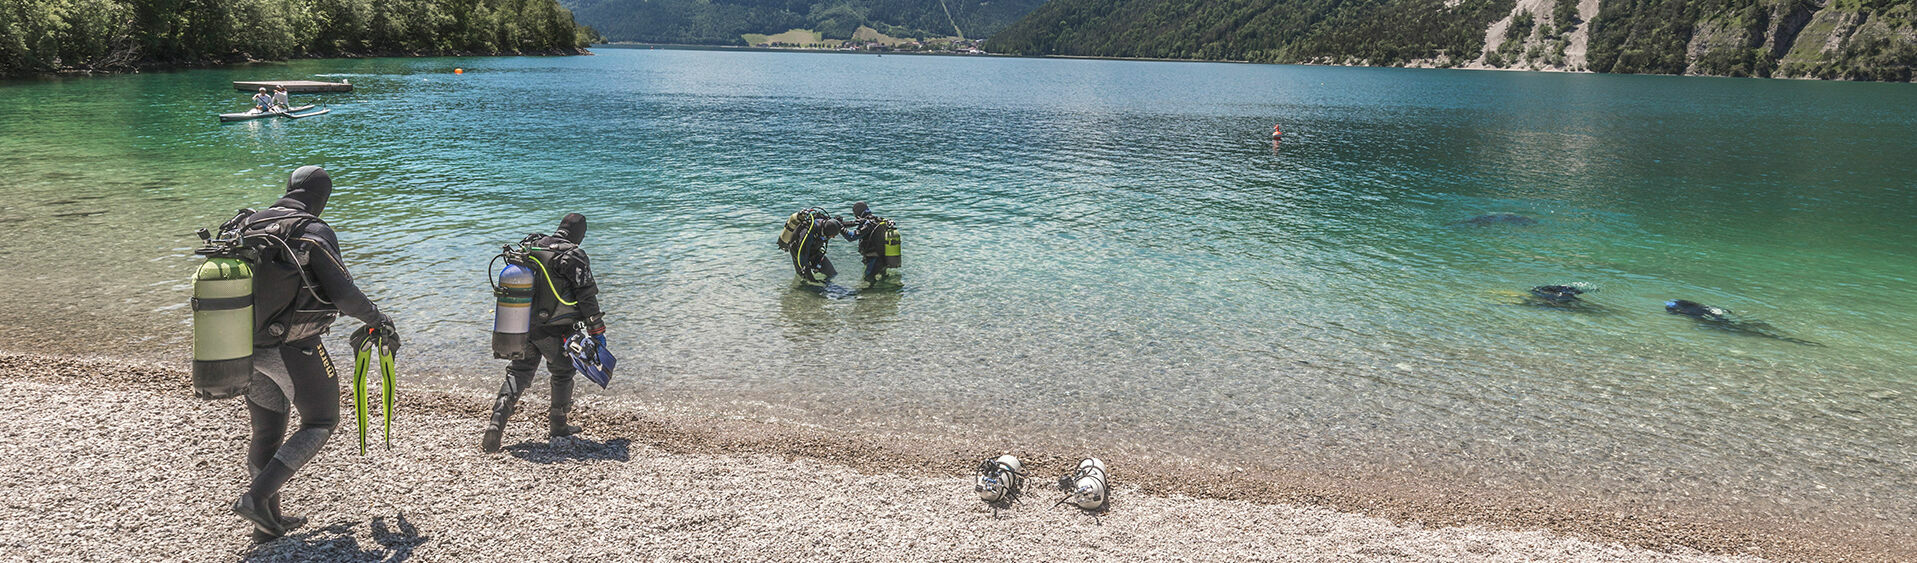 Der Achensee ist nicht nur der größte sondern auch der tiefste See in Tirol und ist daher sehr gut geeignet für Tauchausflüge.